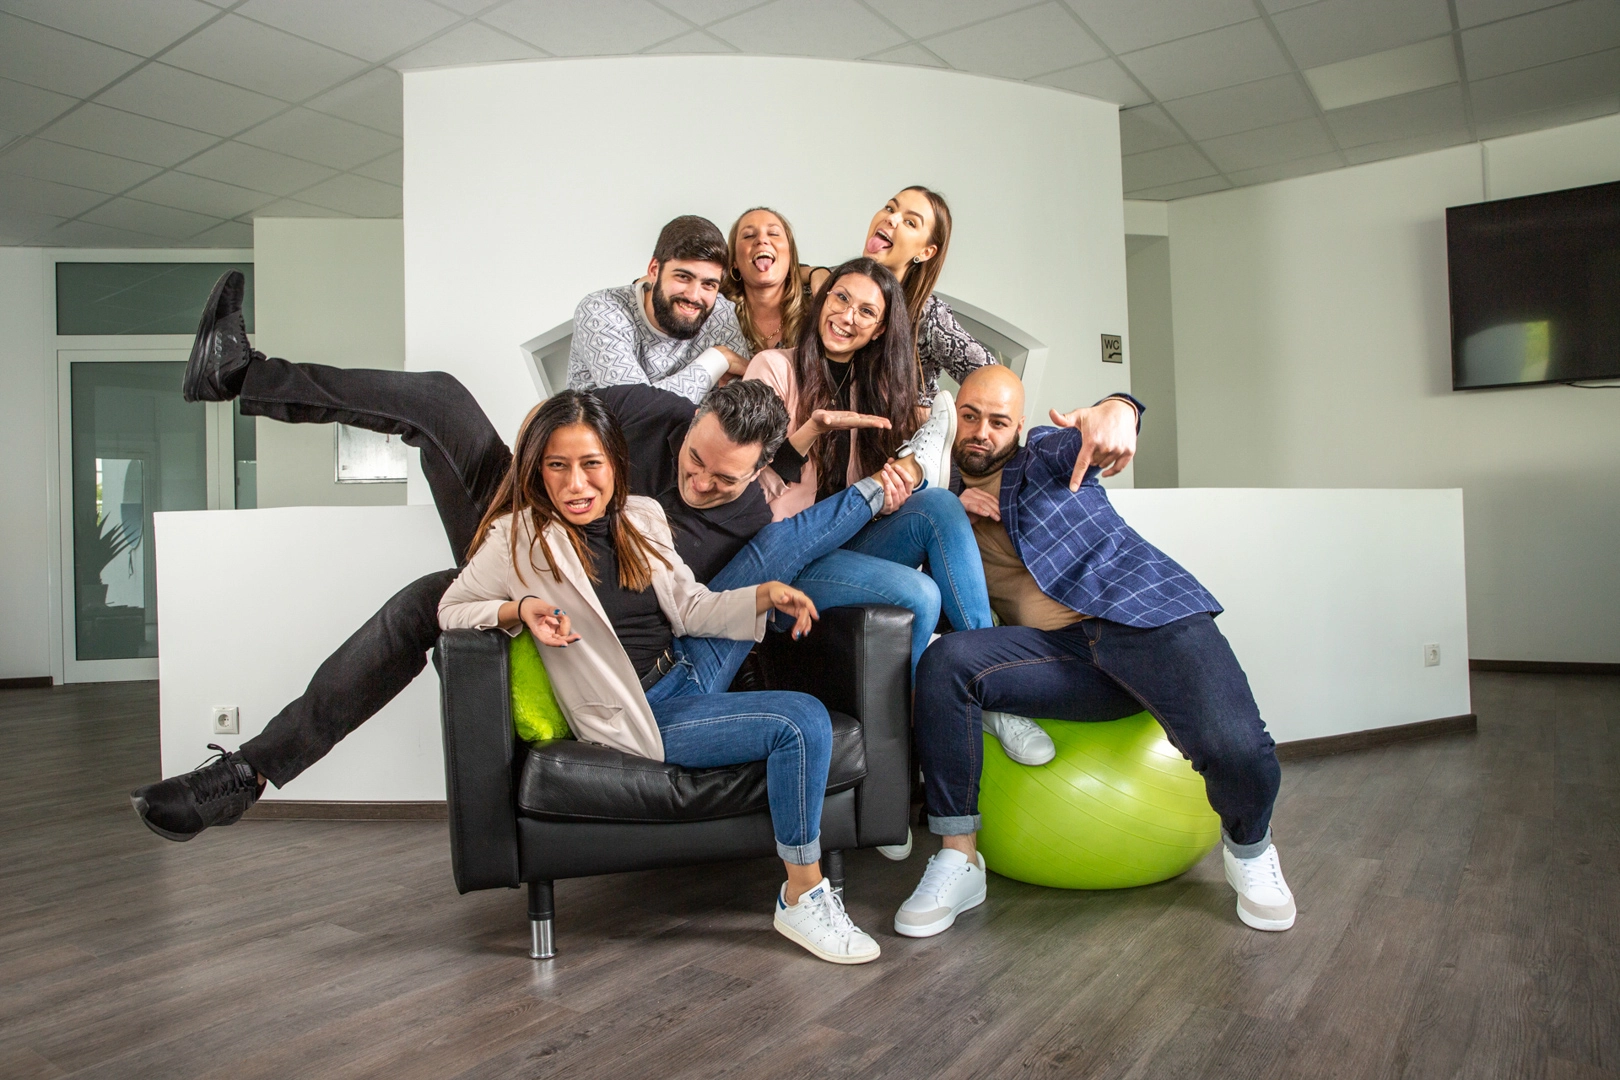 Team Online Marketing Agentur beim Gruppenfoto wild durcheinander